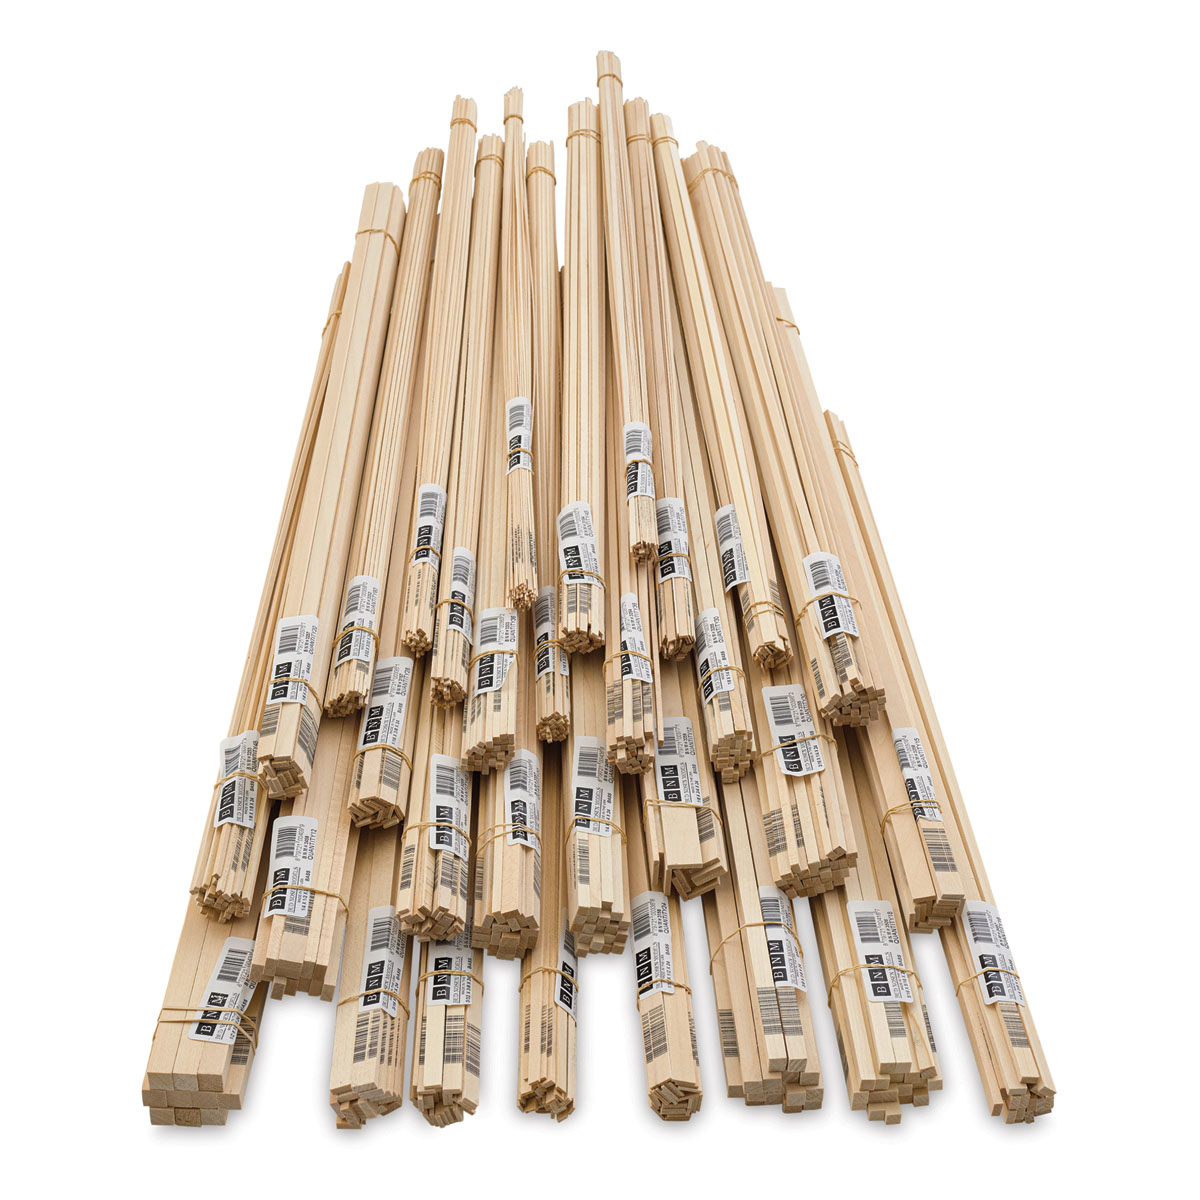 Bud Nosen Balsa Wood Sticks - 1/16 x 3/16 x 36, Pkg of 36, BLICK Art  Materials